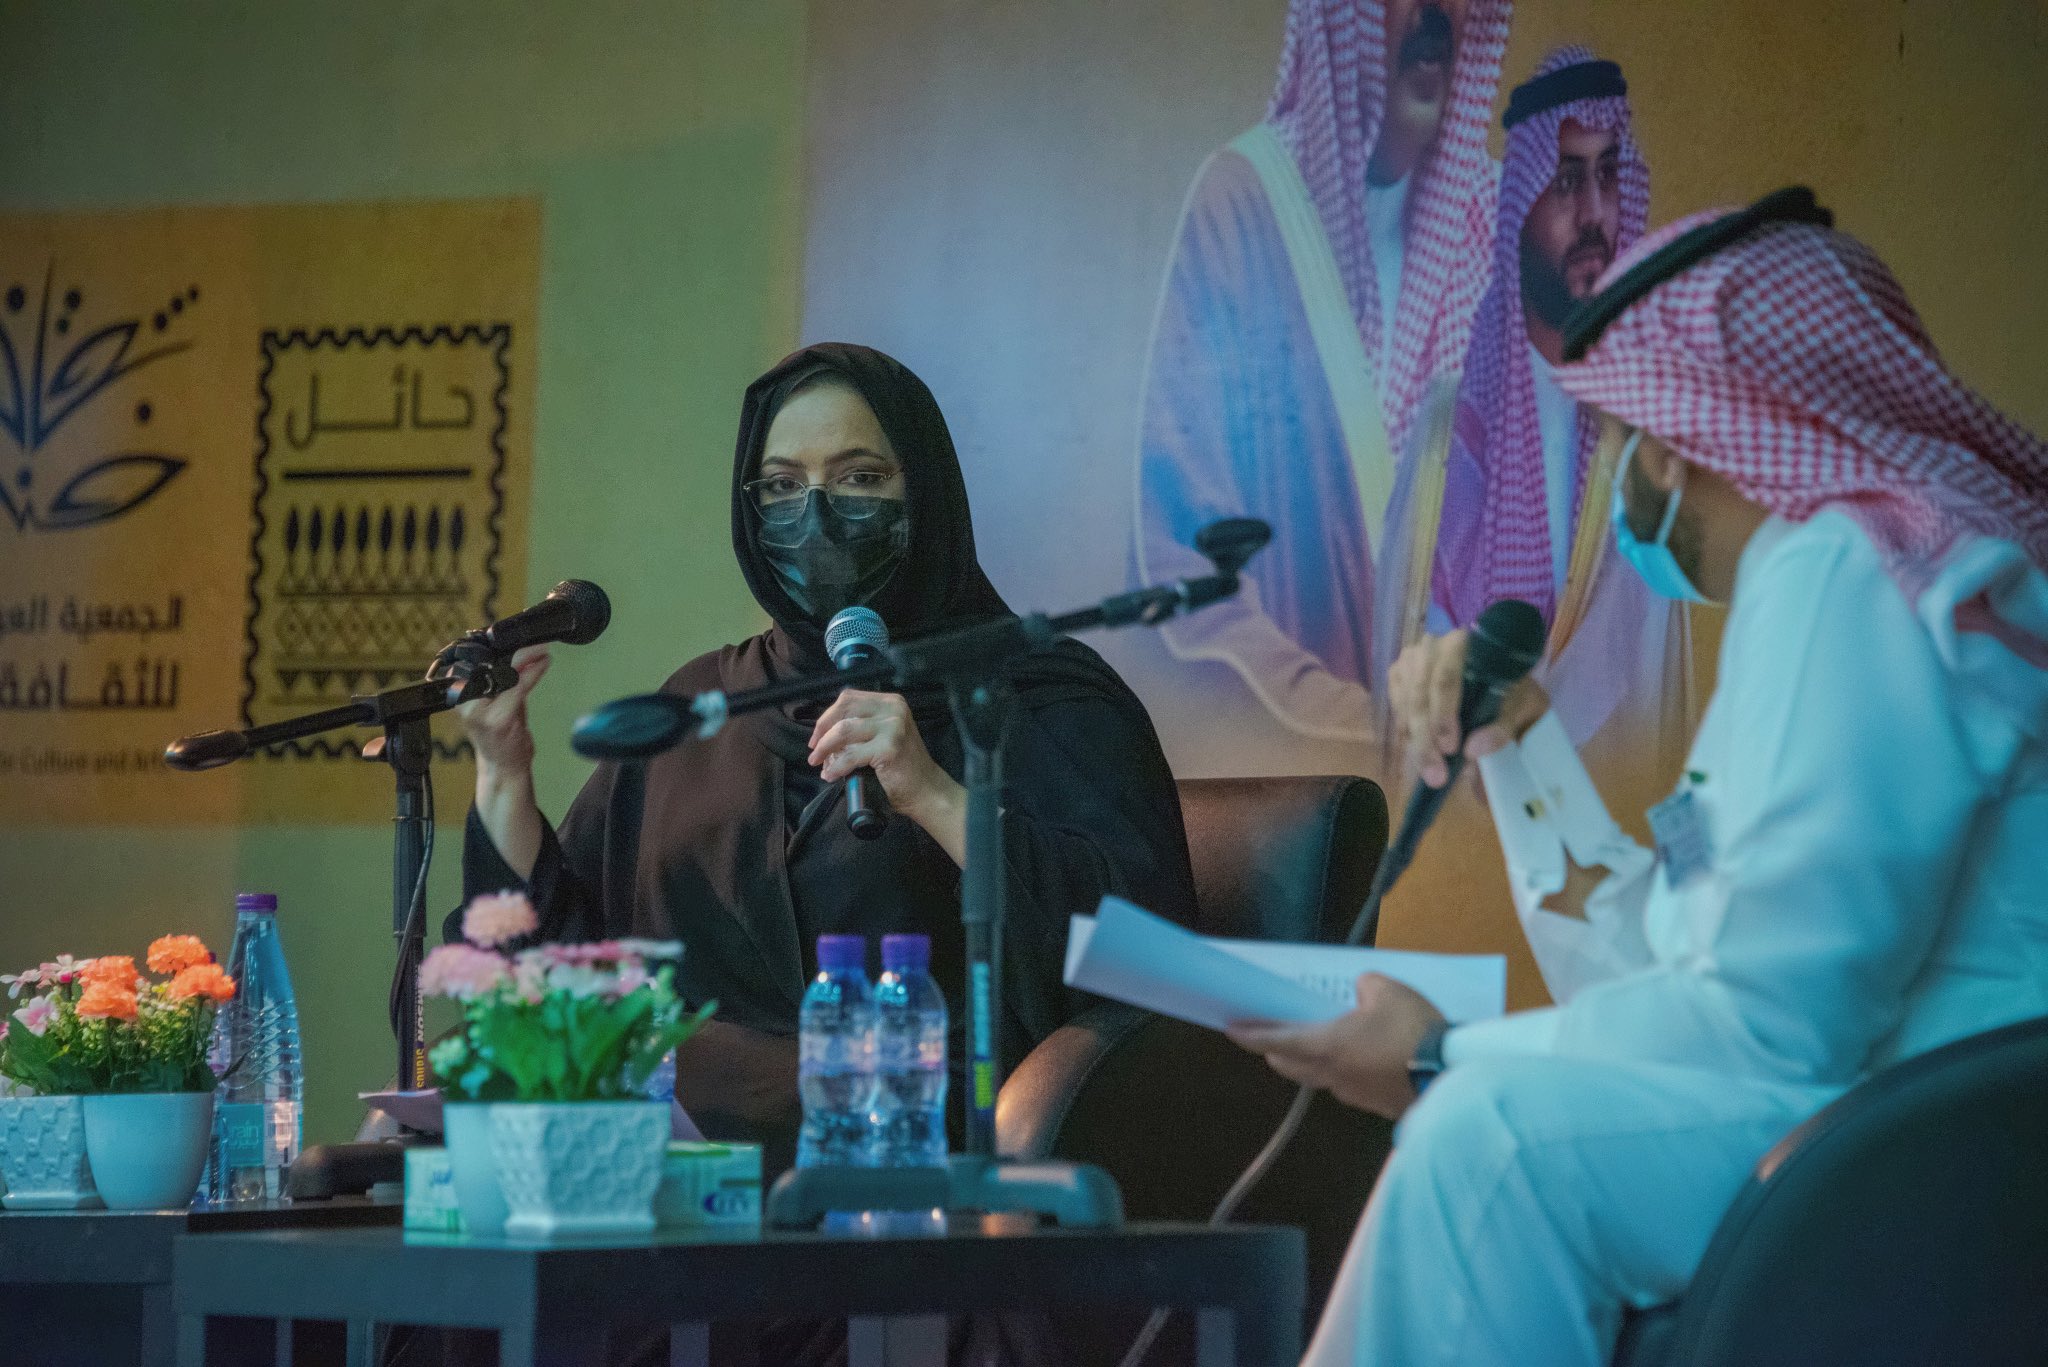 الأميرة غادة بنت فهد آل سعود تخاطب ورشة دور الثقافة في تعزيز المفاهيم الصحية بحائل وتشيد بالجهات المنظمة